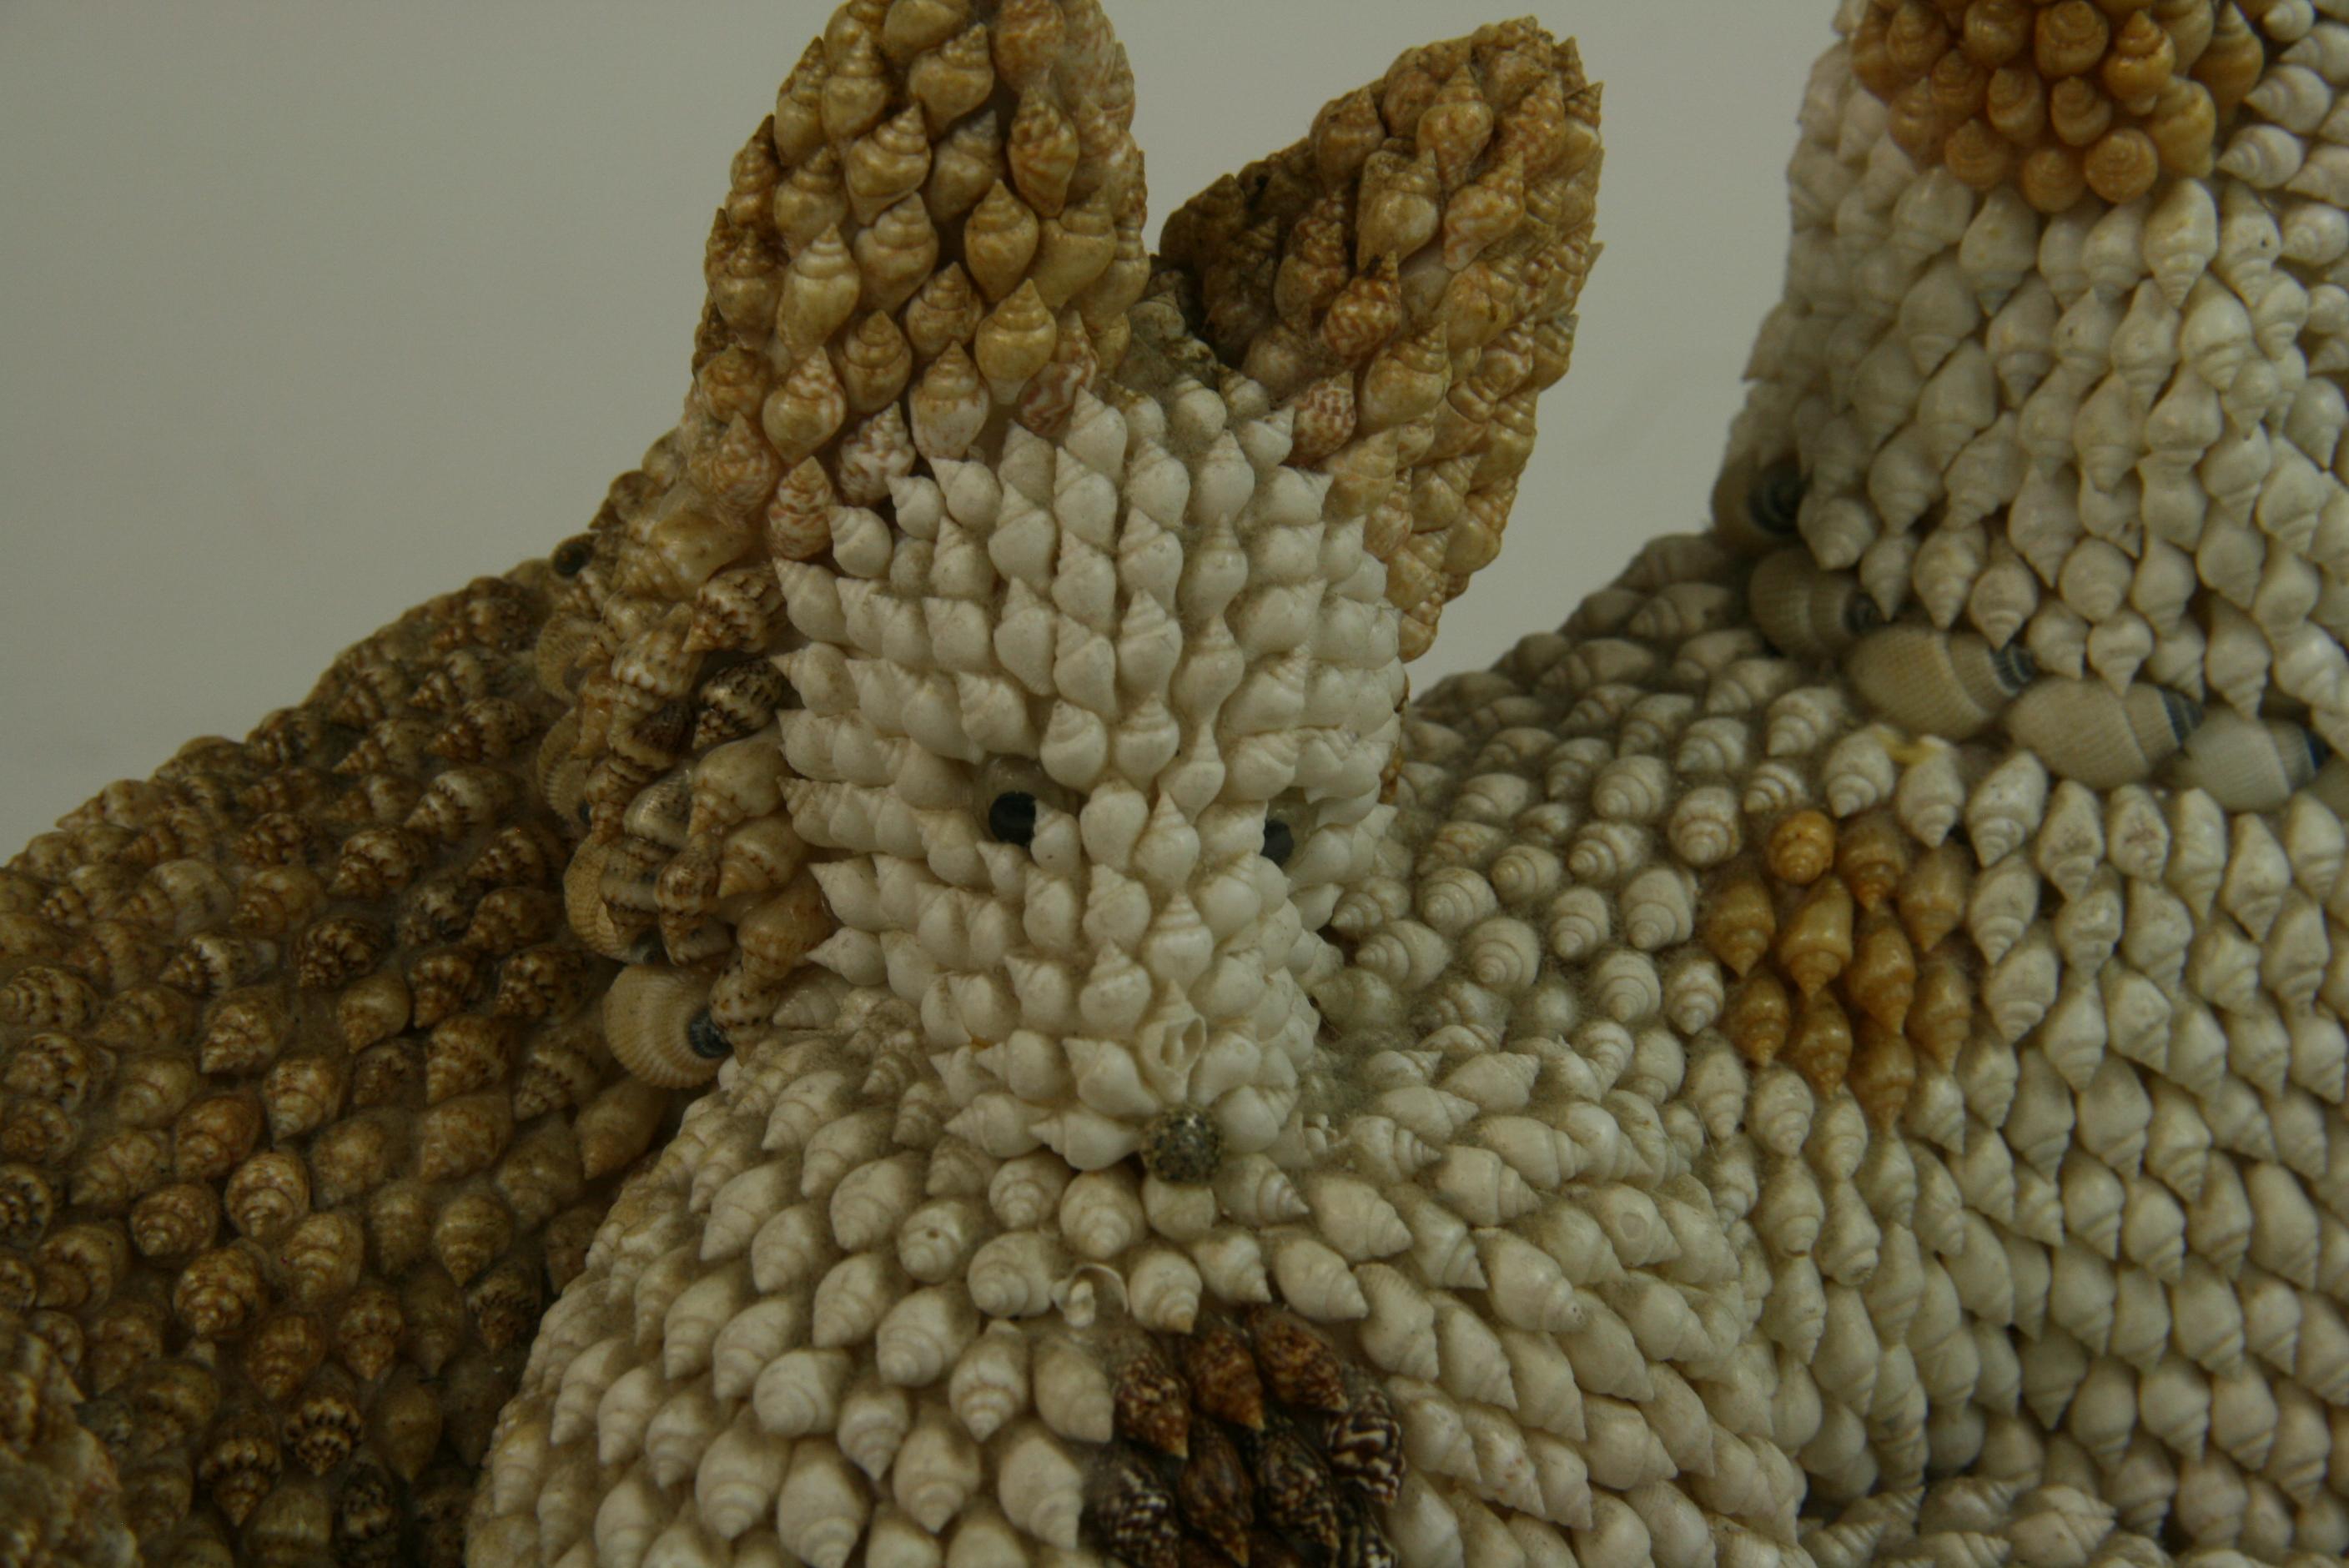 Folk Art Dog Sculpture Made from Sea Shells 2